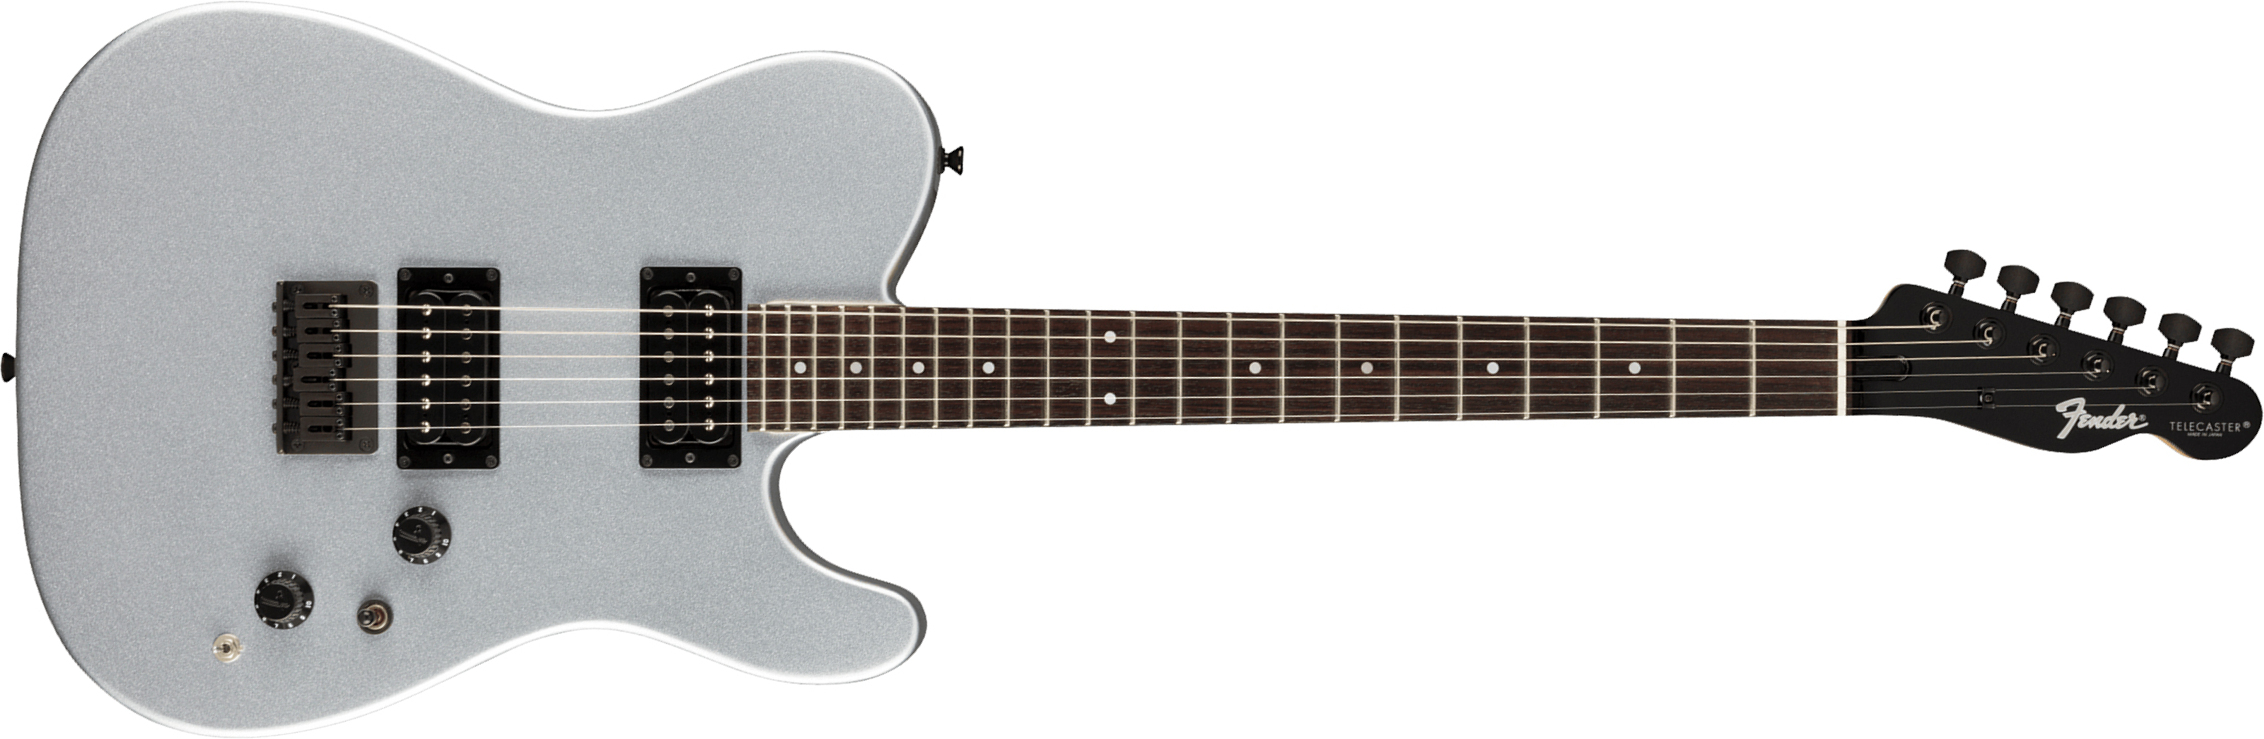 Fender Tele Boxer Hh Jap 2h Ht Rw +housse - Inca Silver - Televorm elektrische gitaar - Main picture